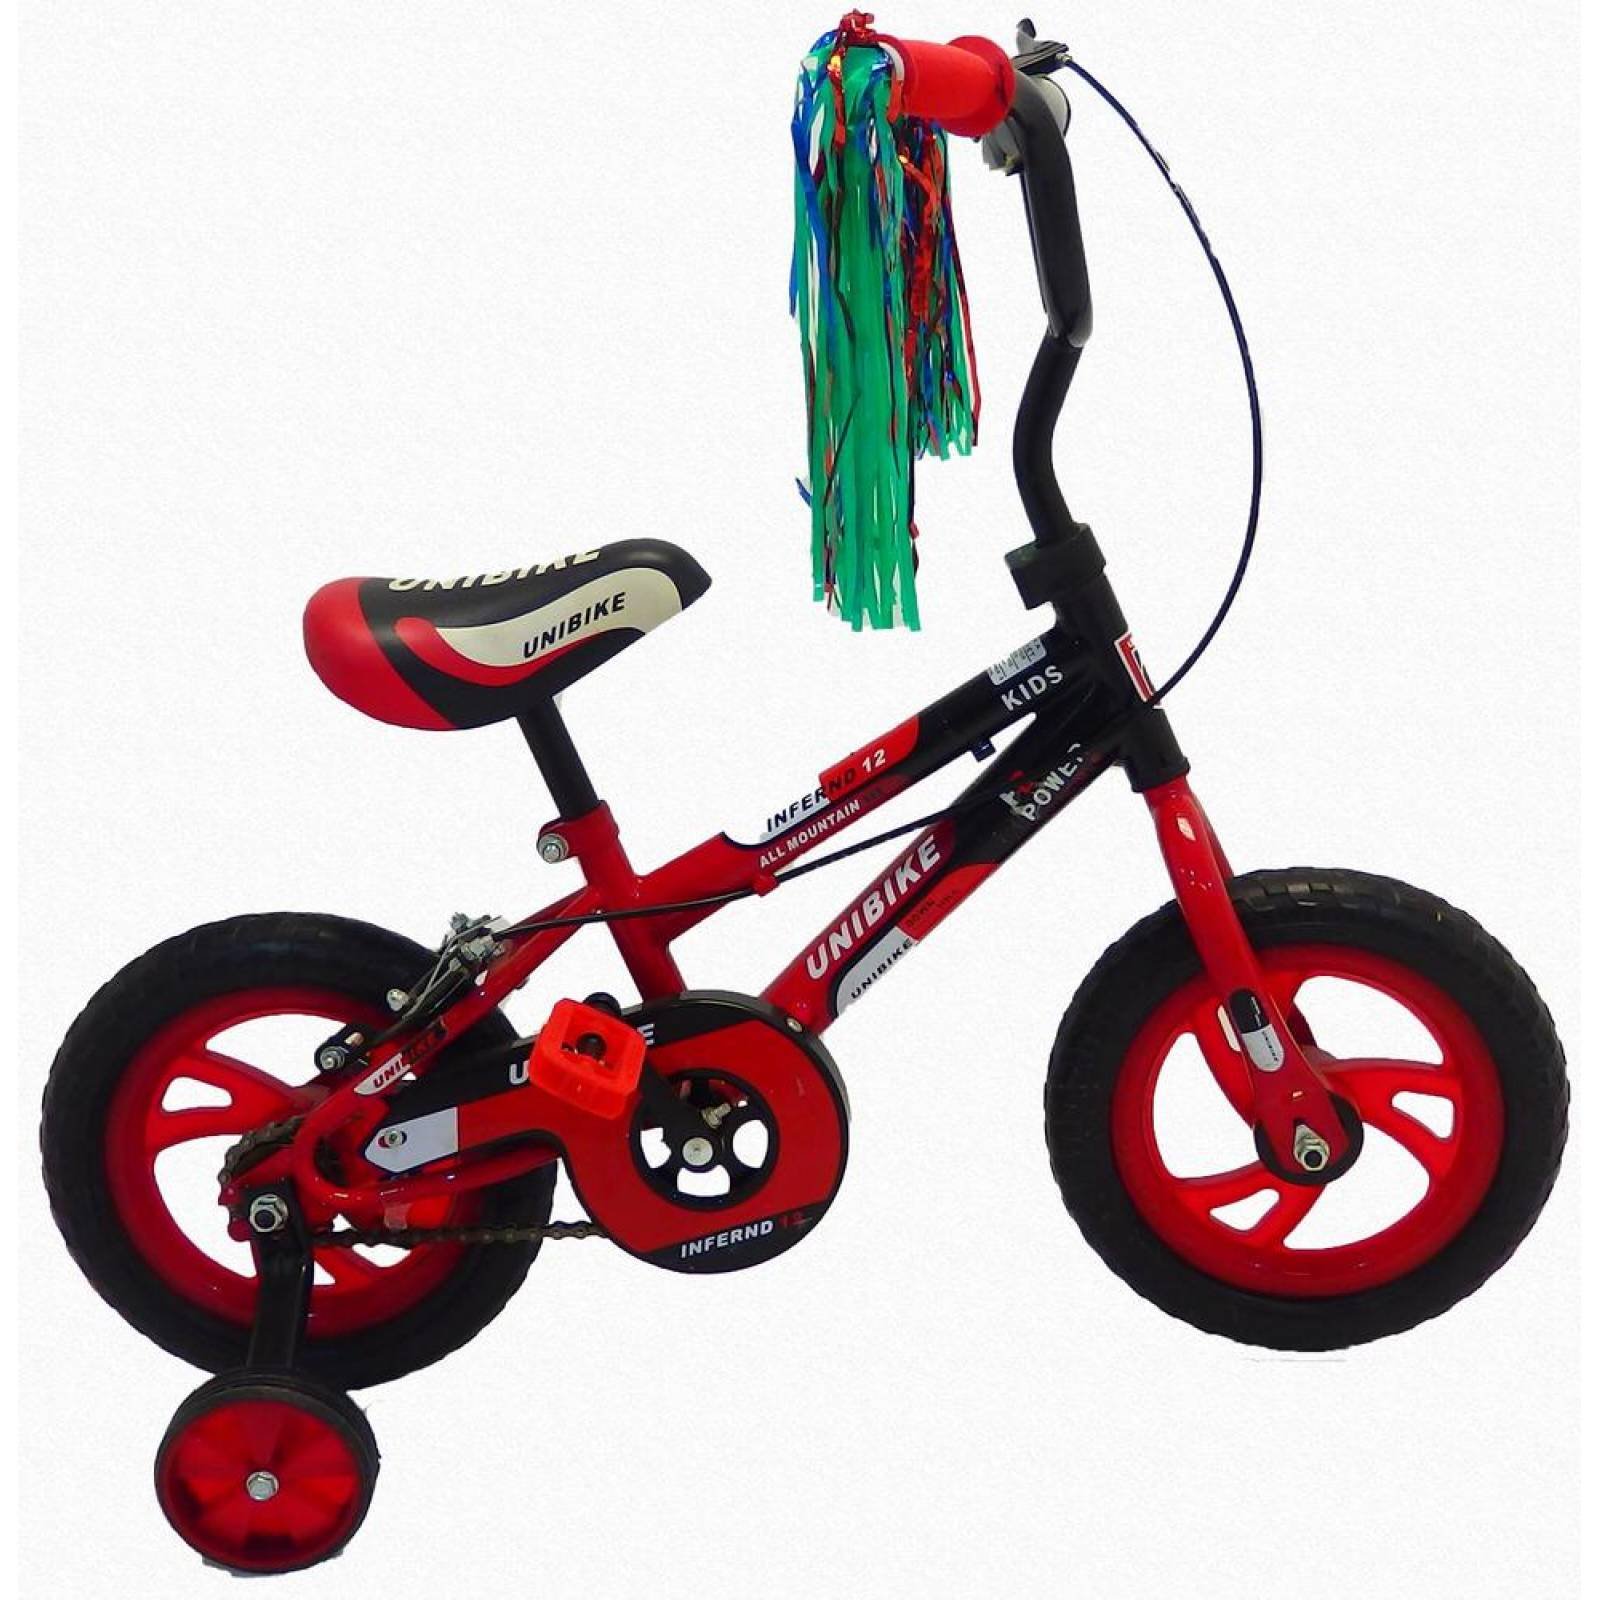 Bicicleta Infantil para niño Rodada 12 con llanta de goma  - Rojo